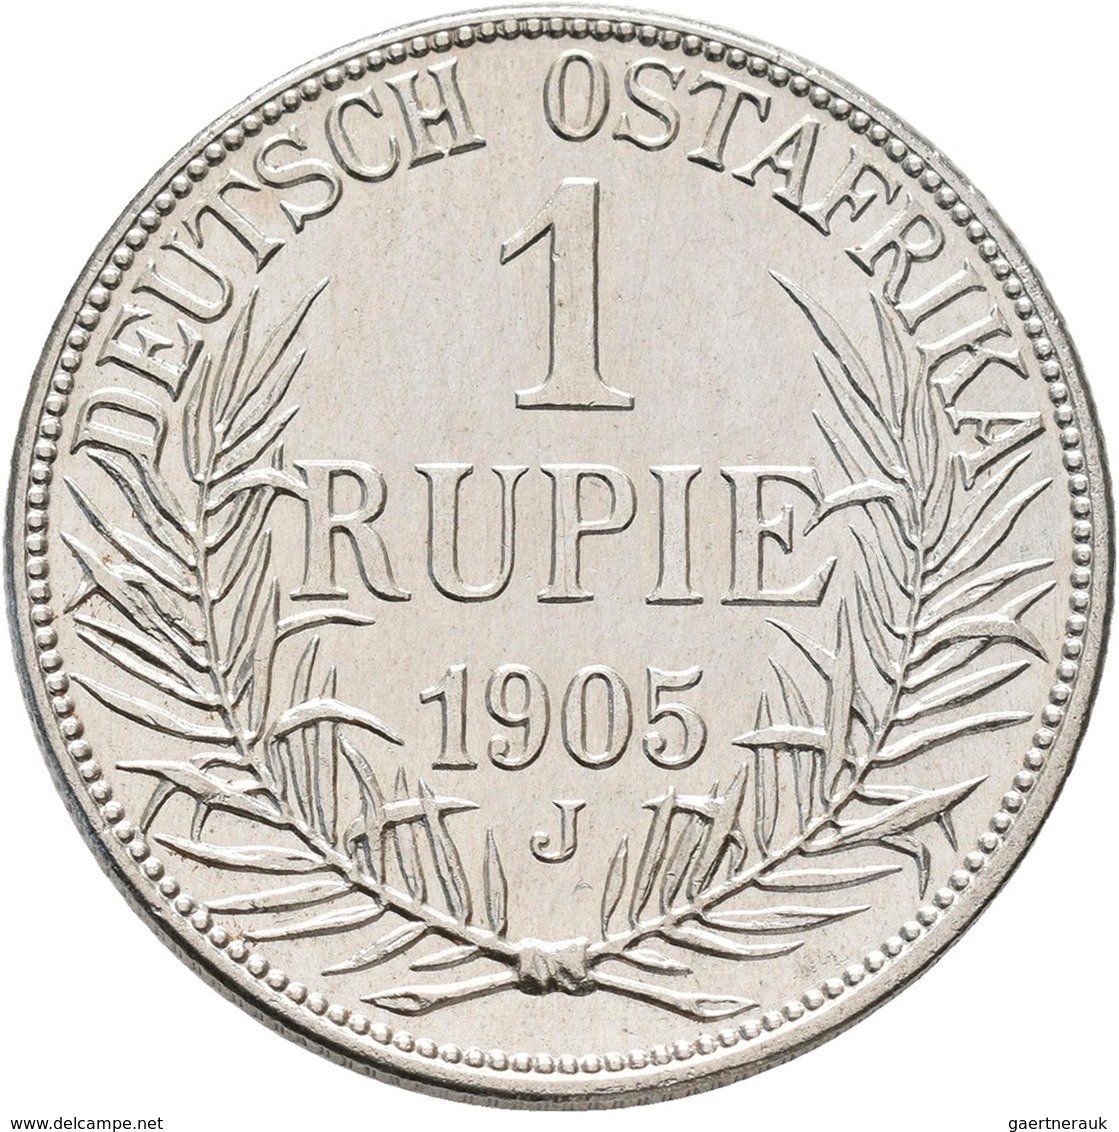 Deutsch-Ostafrika: DOA Und Danzig: 7 Münzen Aus Deutsch-Ostafrika Mit 1 Rupie 1905 J, ½ Rupie 1901 S - German East Africa